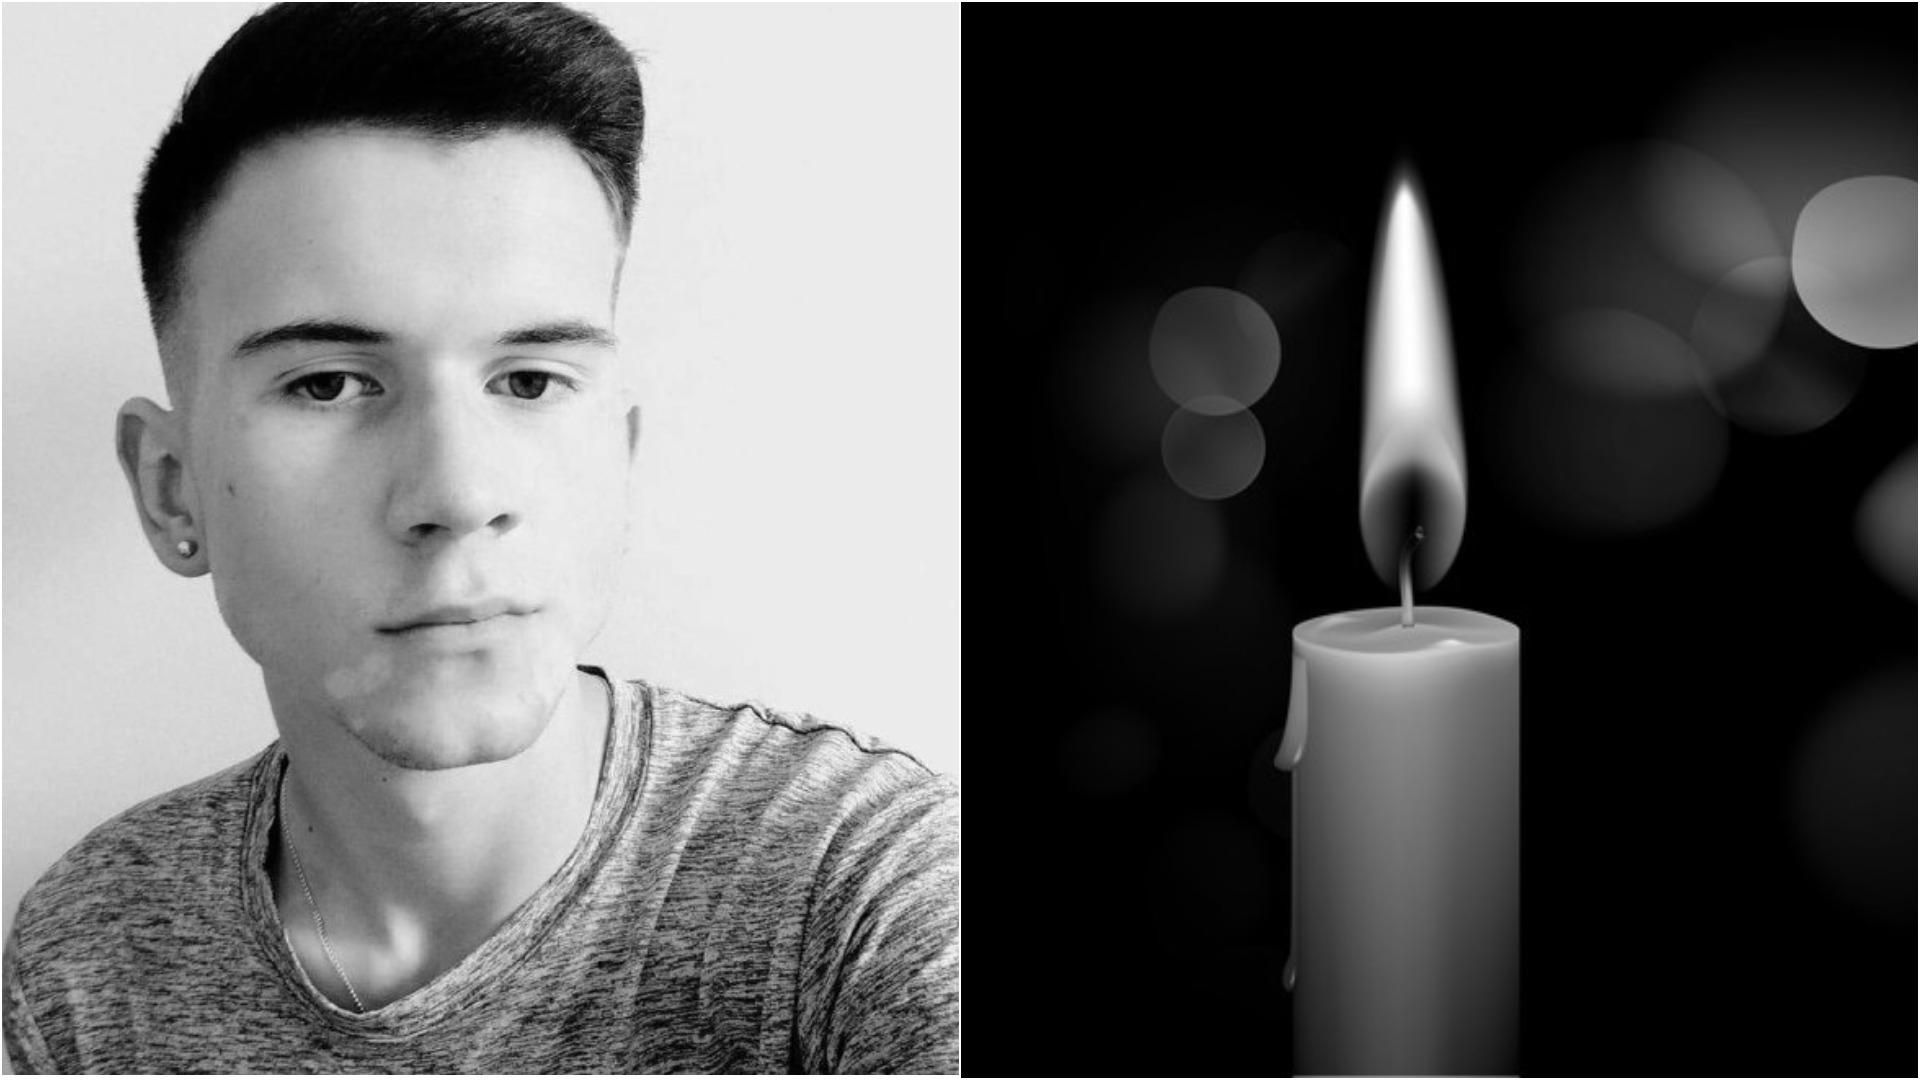 Було лише 23: помер Володимир Кушнаренко, якому збирали кошти на лікування - Новини Луцьк - Освіта